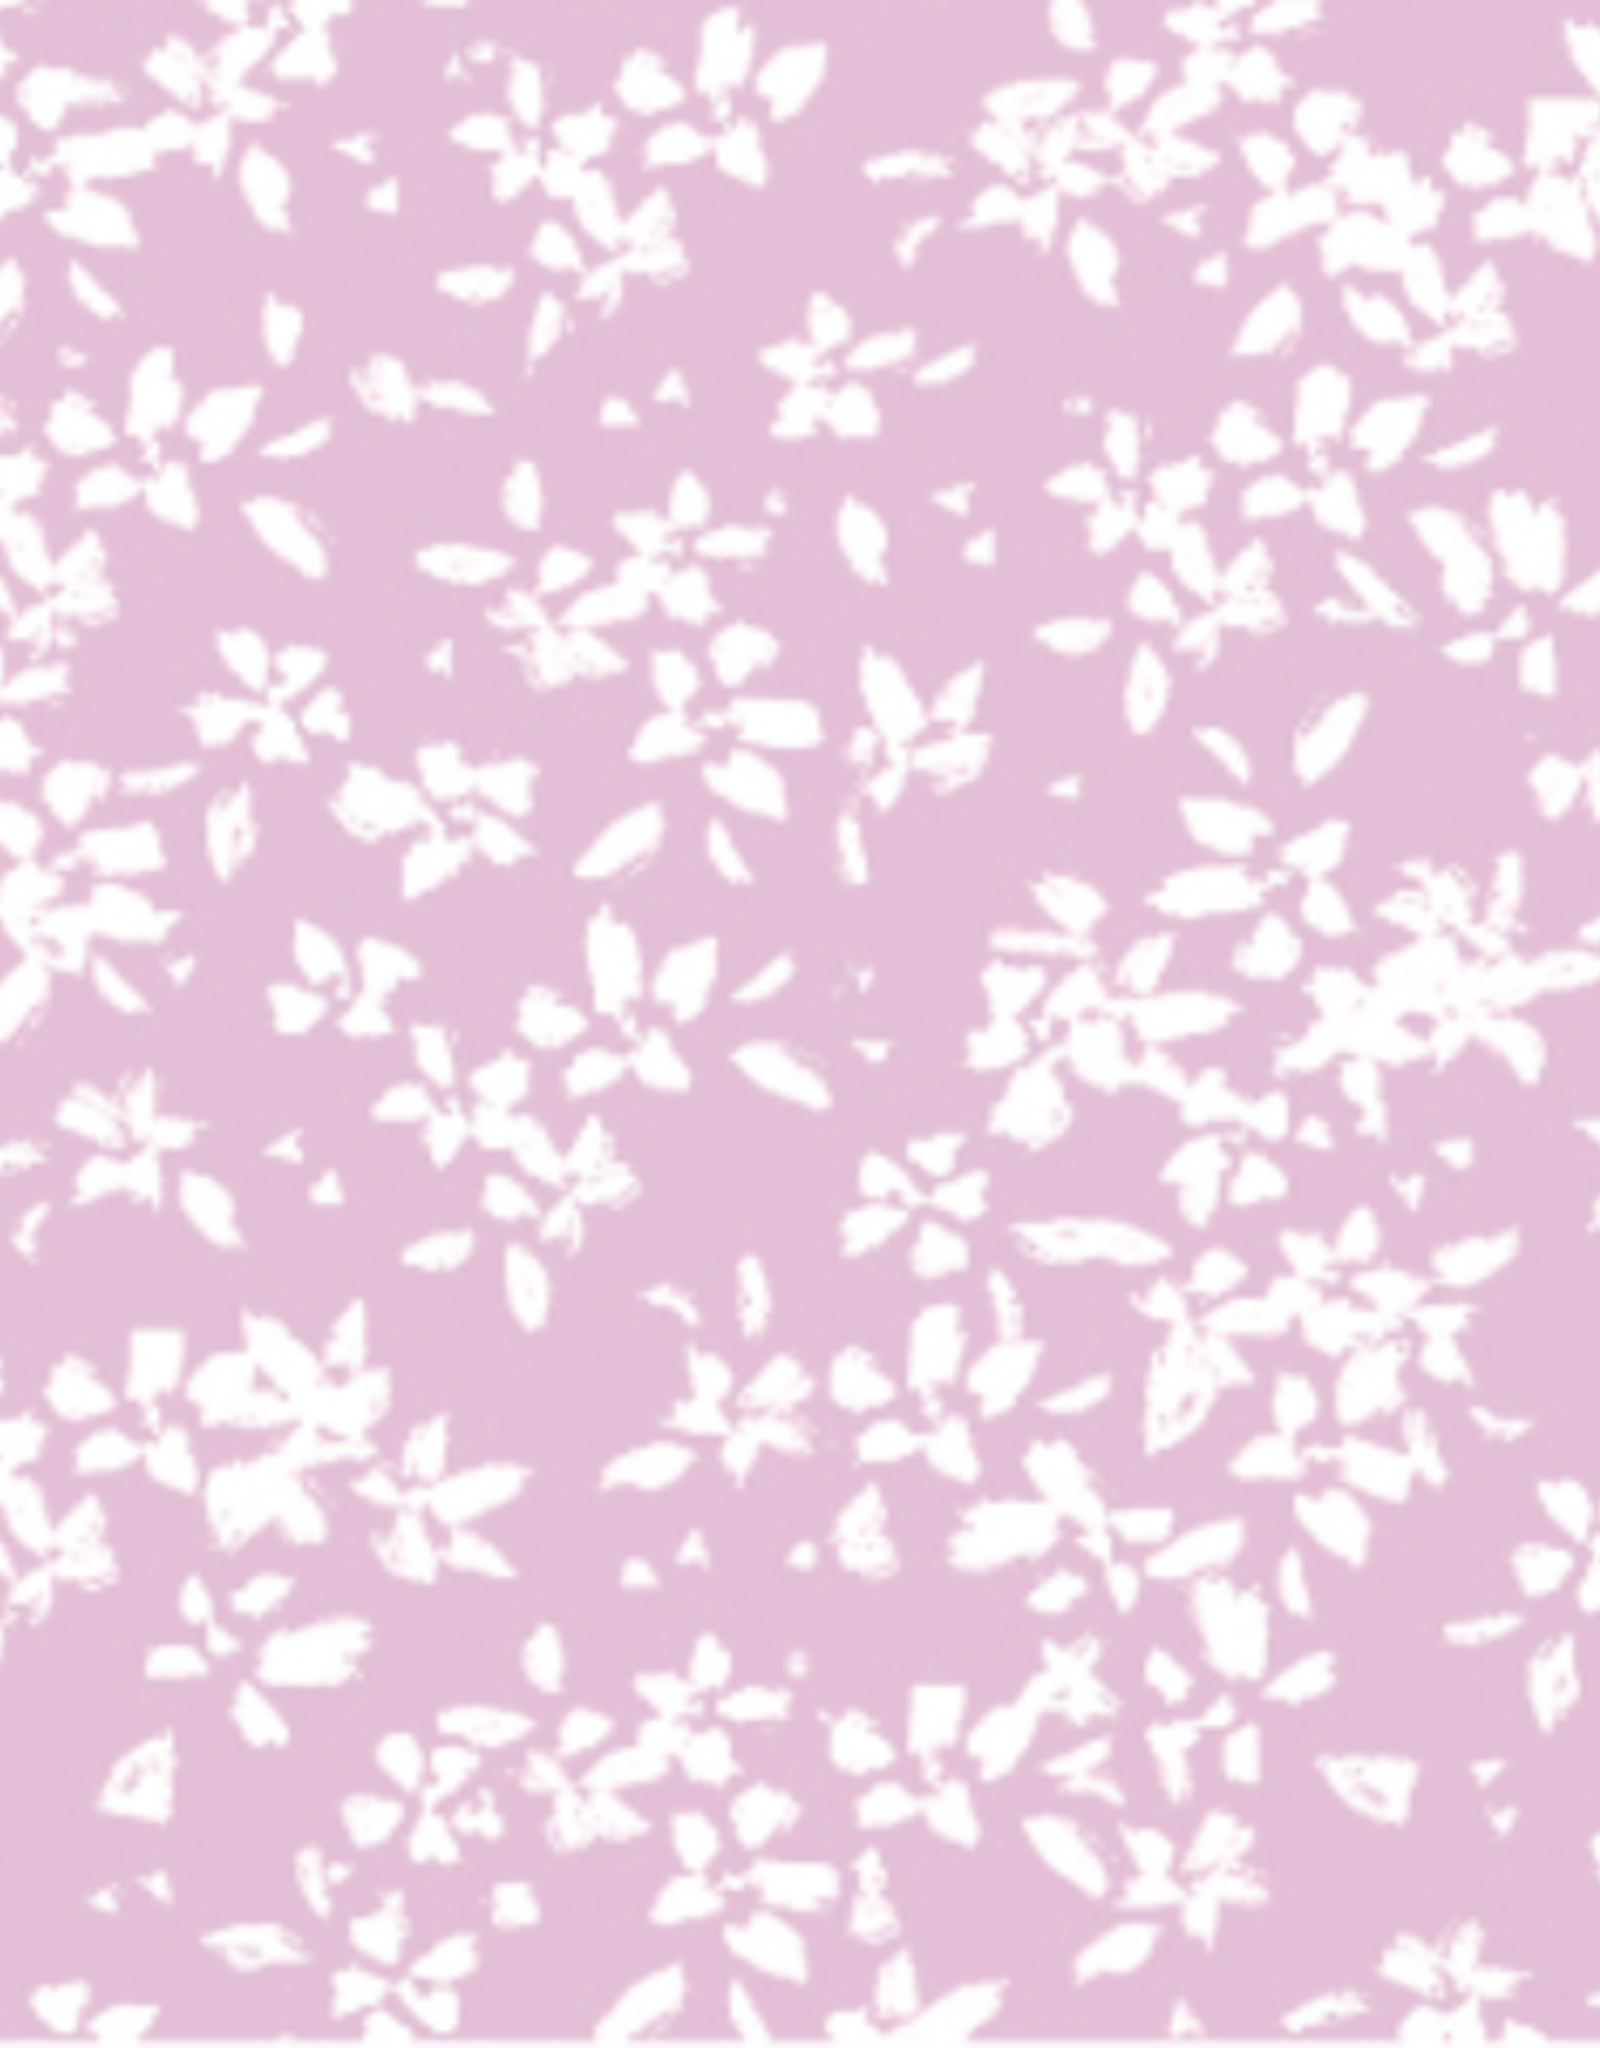 Camelot Fabrics Scattered Petals -Lilac